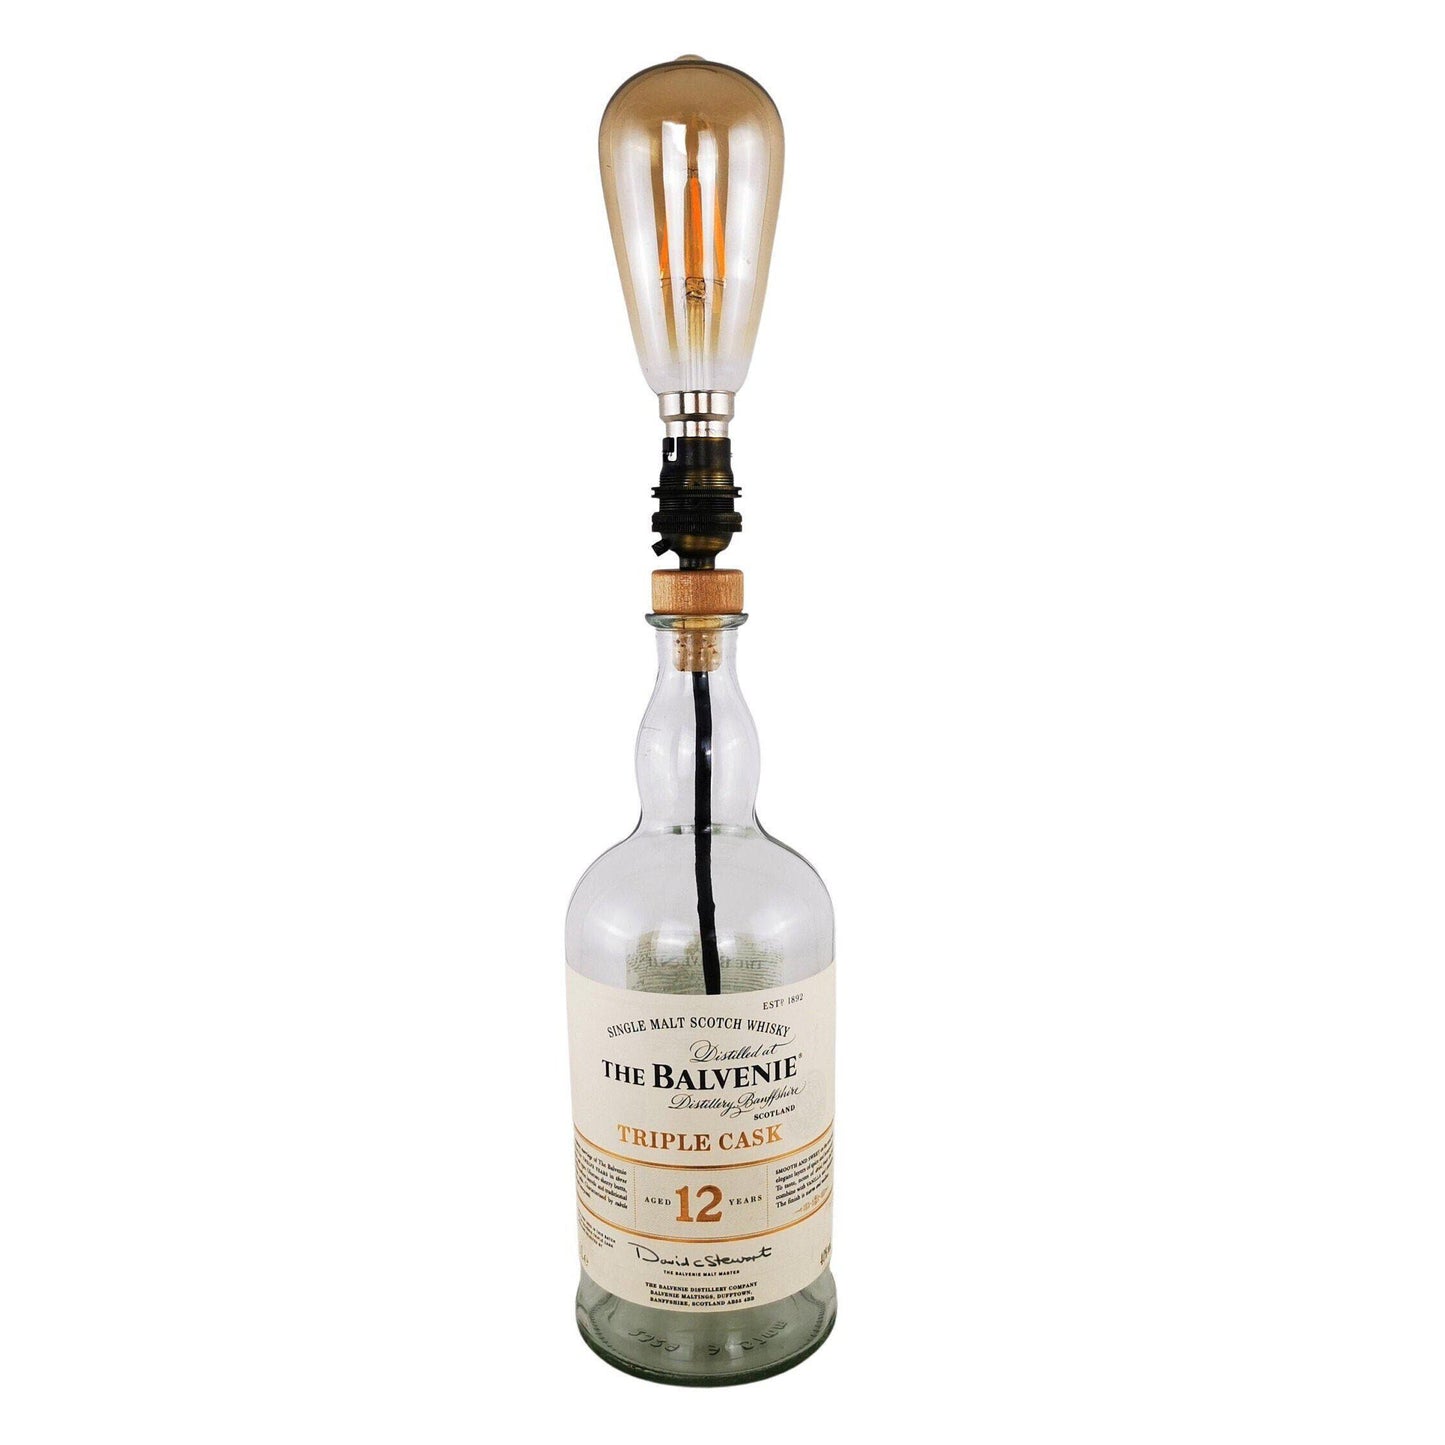 Balvenie Triple Cask Whisky Bottle Table Lamp (1) Whisky Bottle Table Lamps